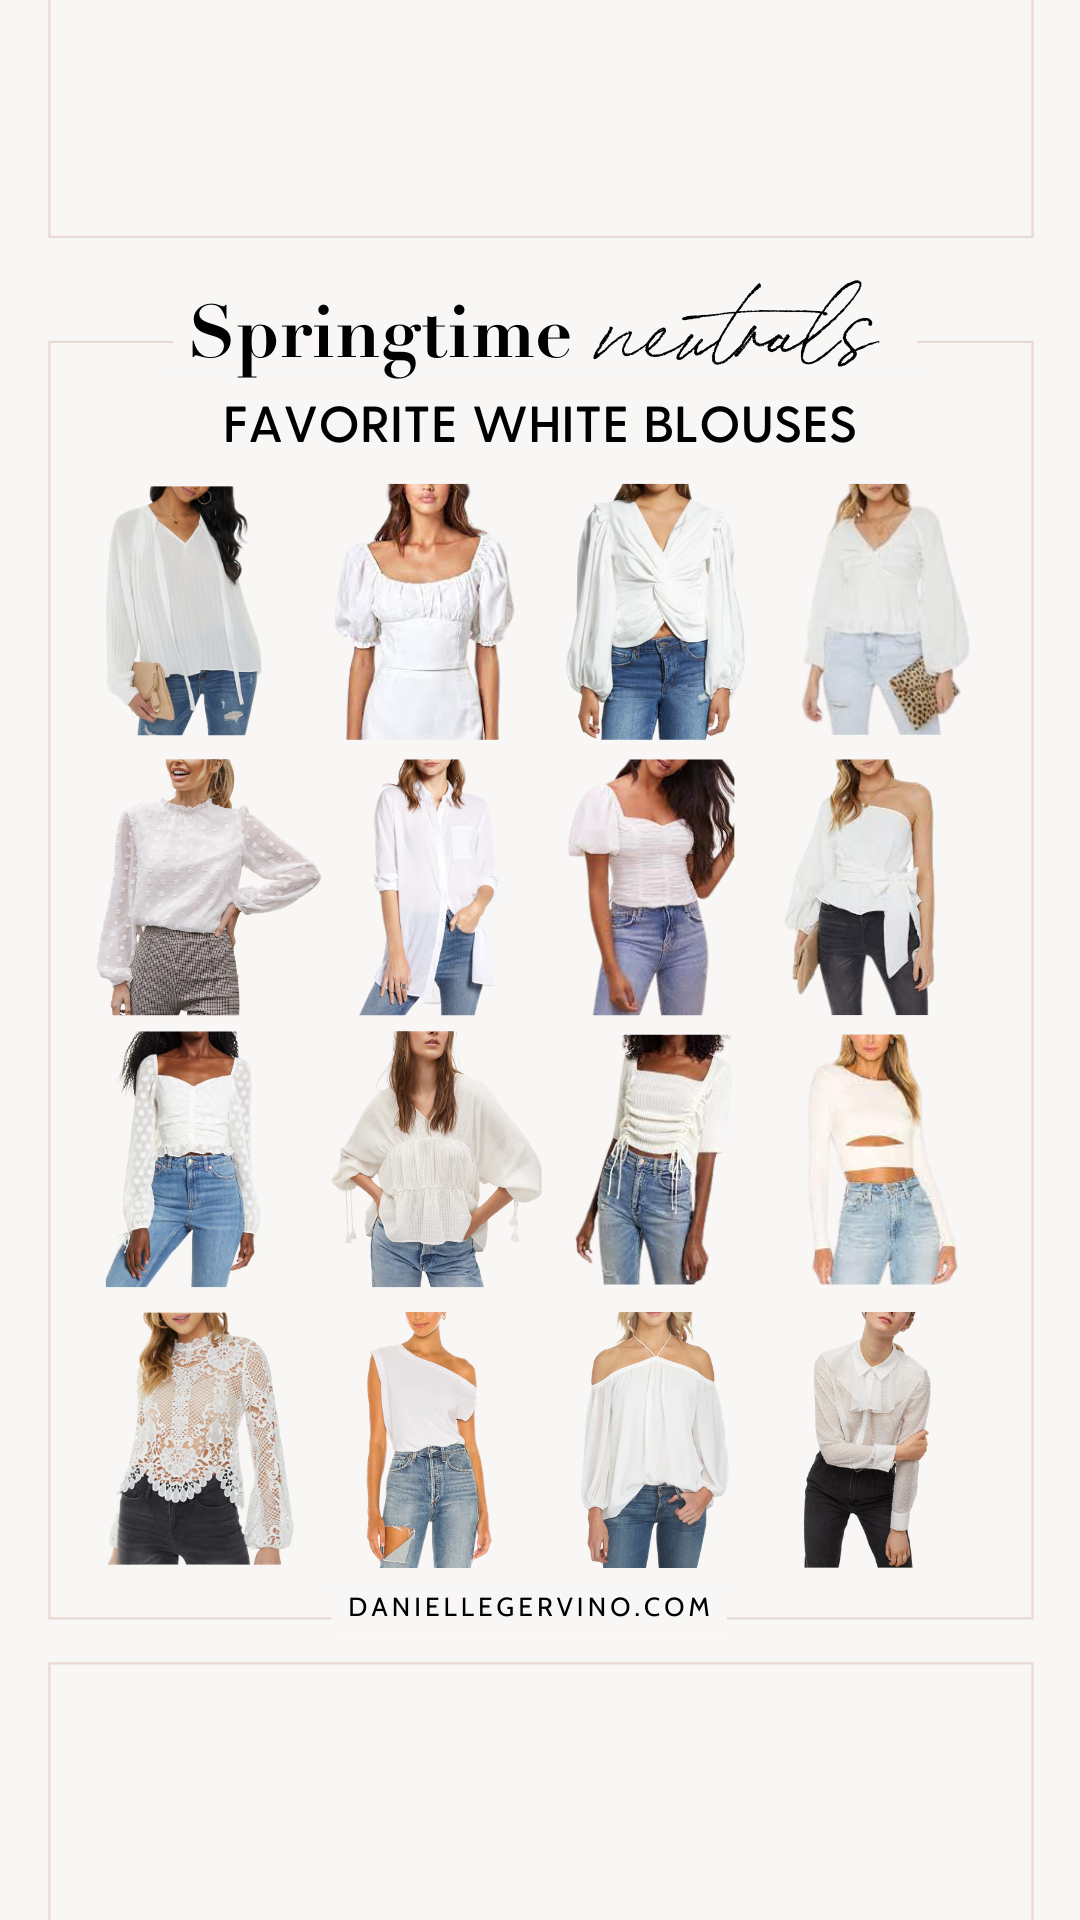 White blouses